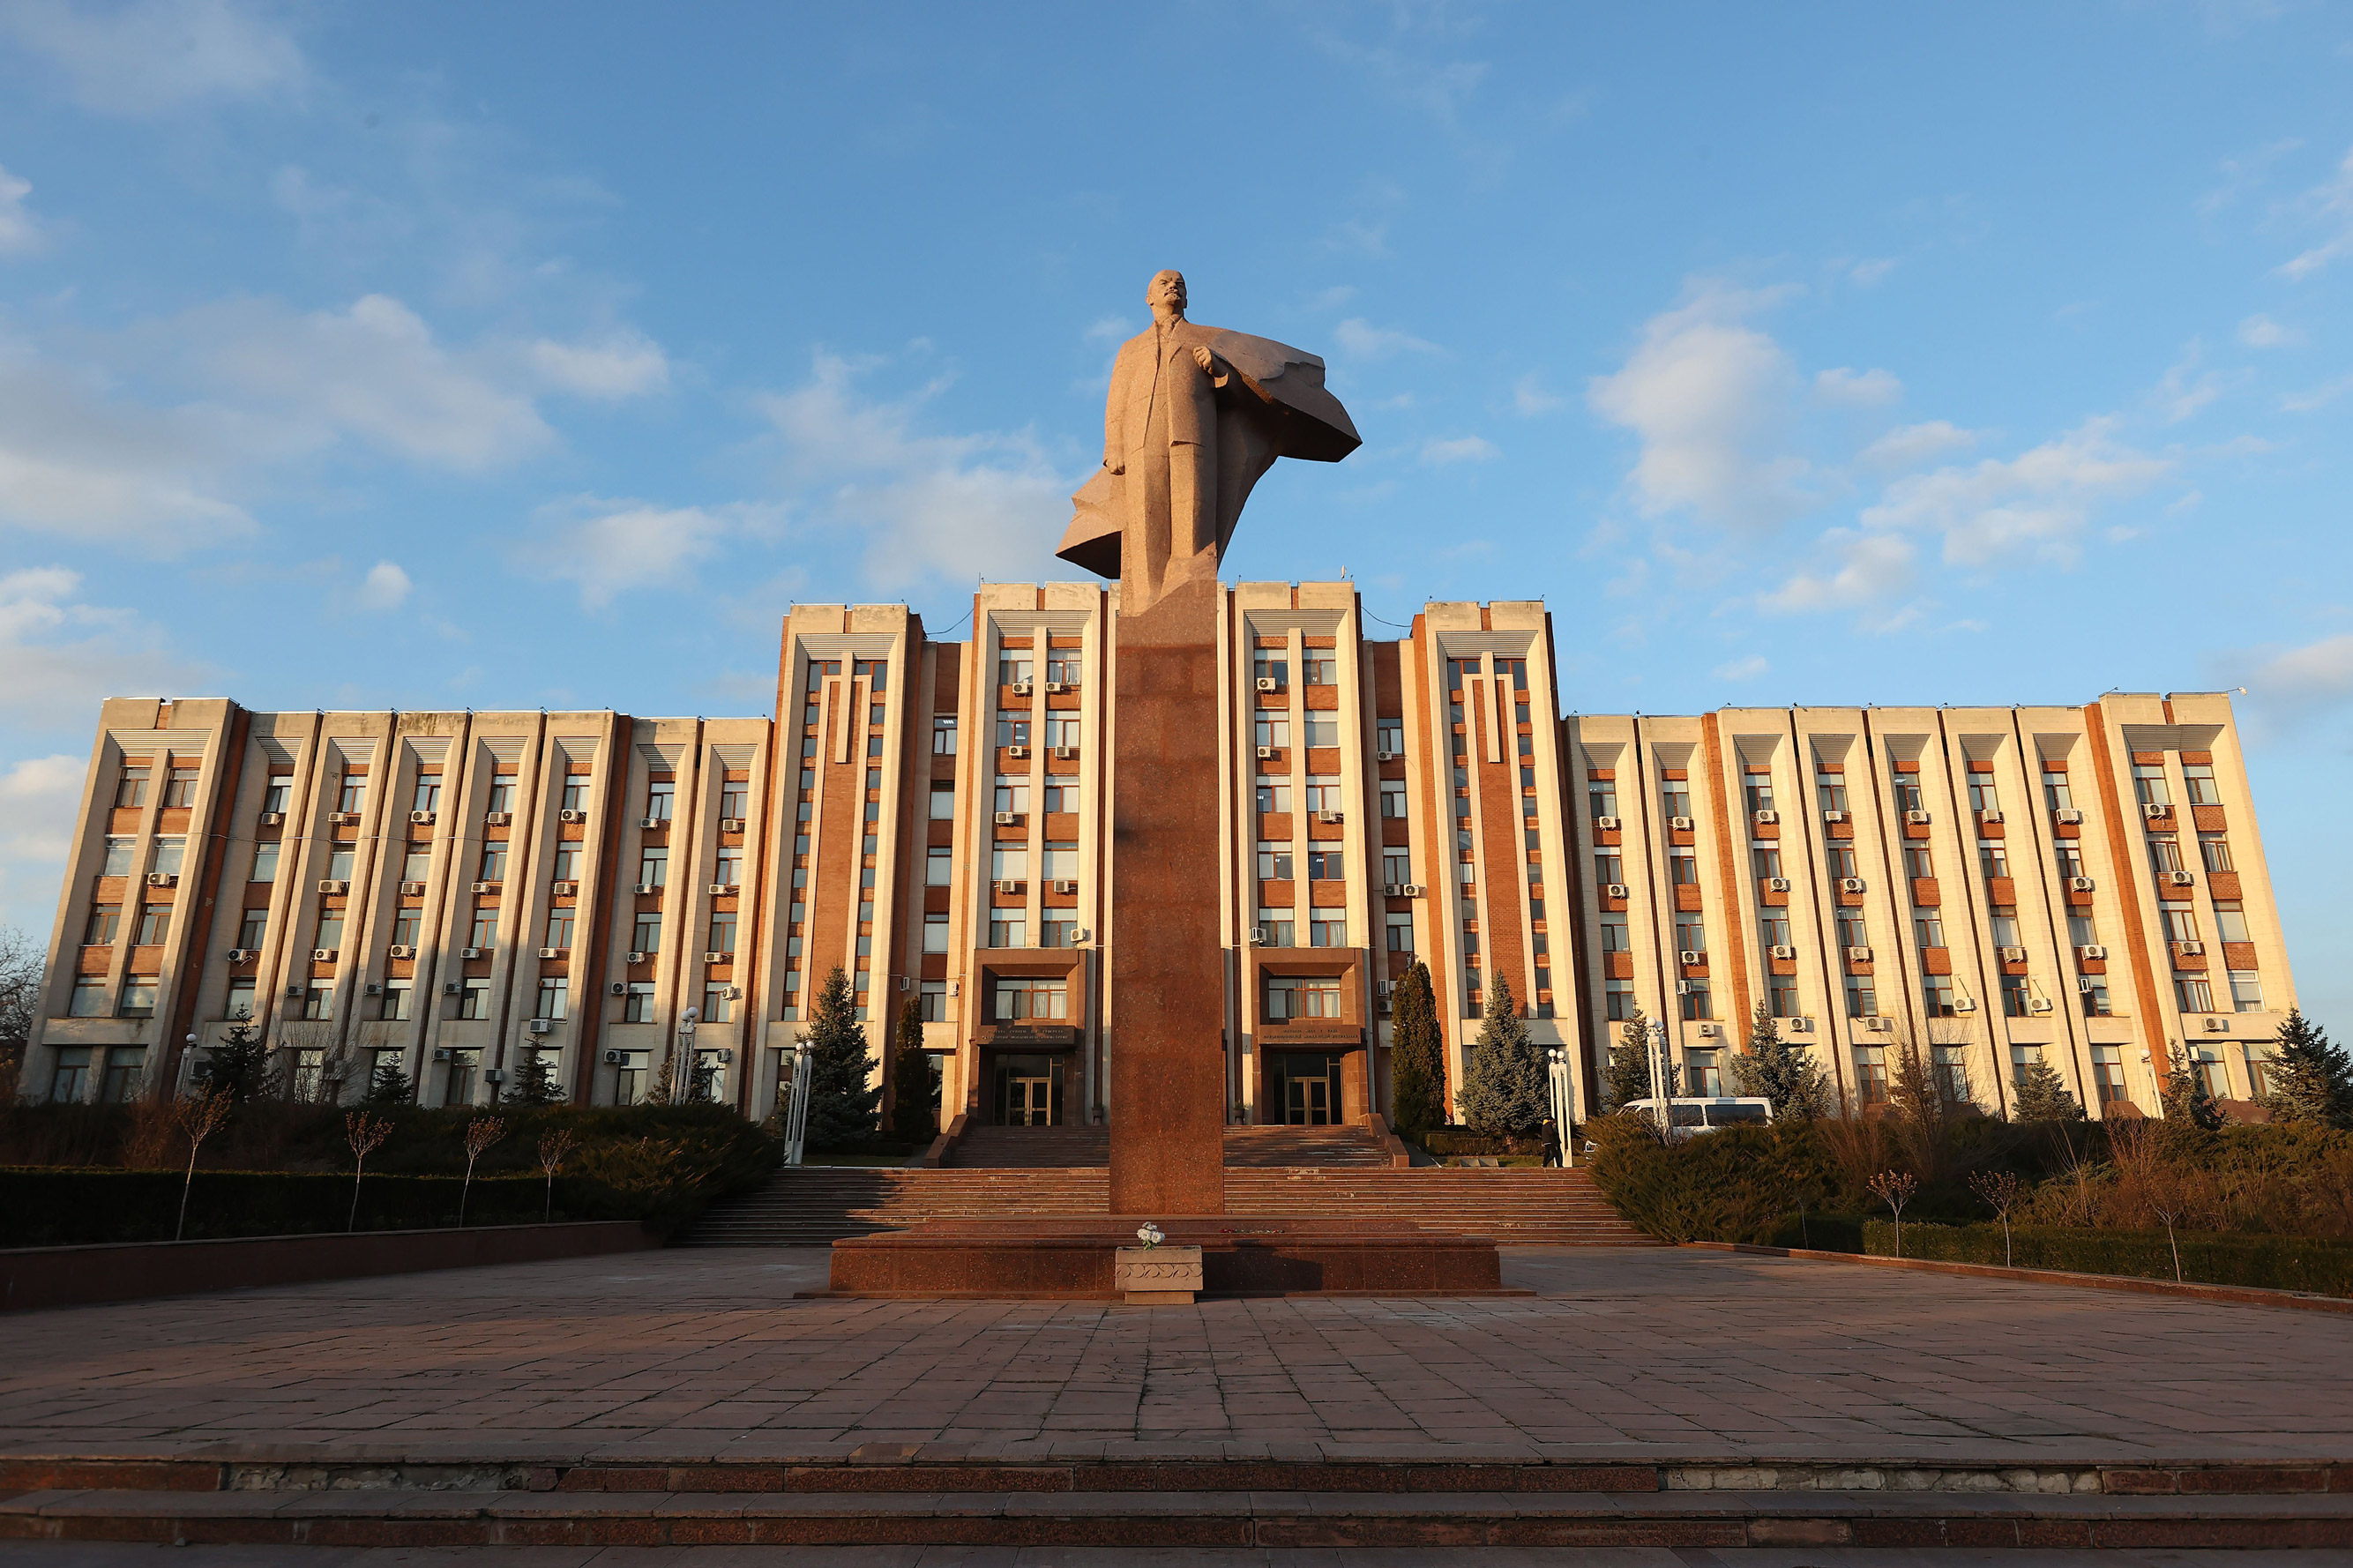 O vedere a consiliului orașului Tiraspol, capitala Transnistriei, Moldova pe 25 noiembrie 2021.